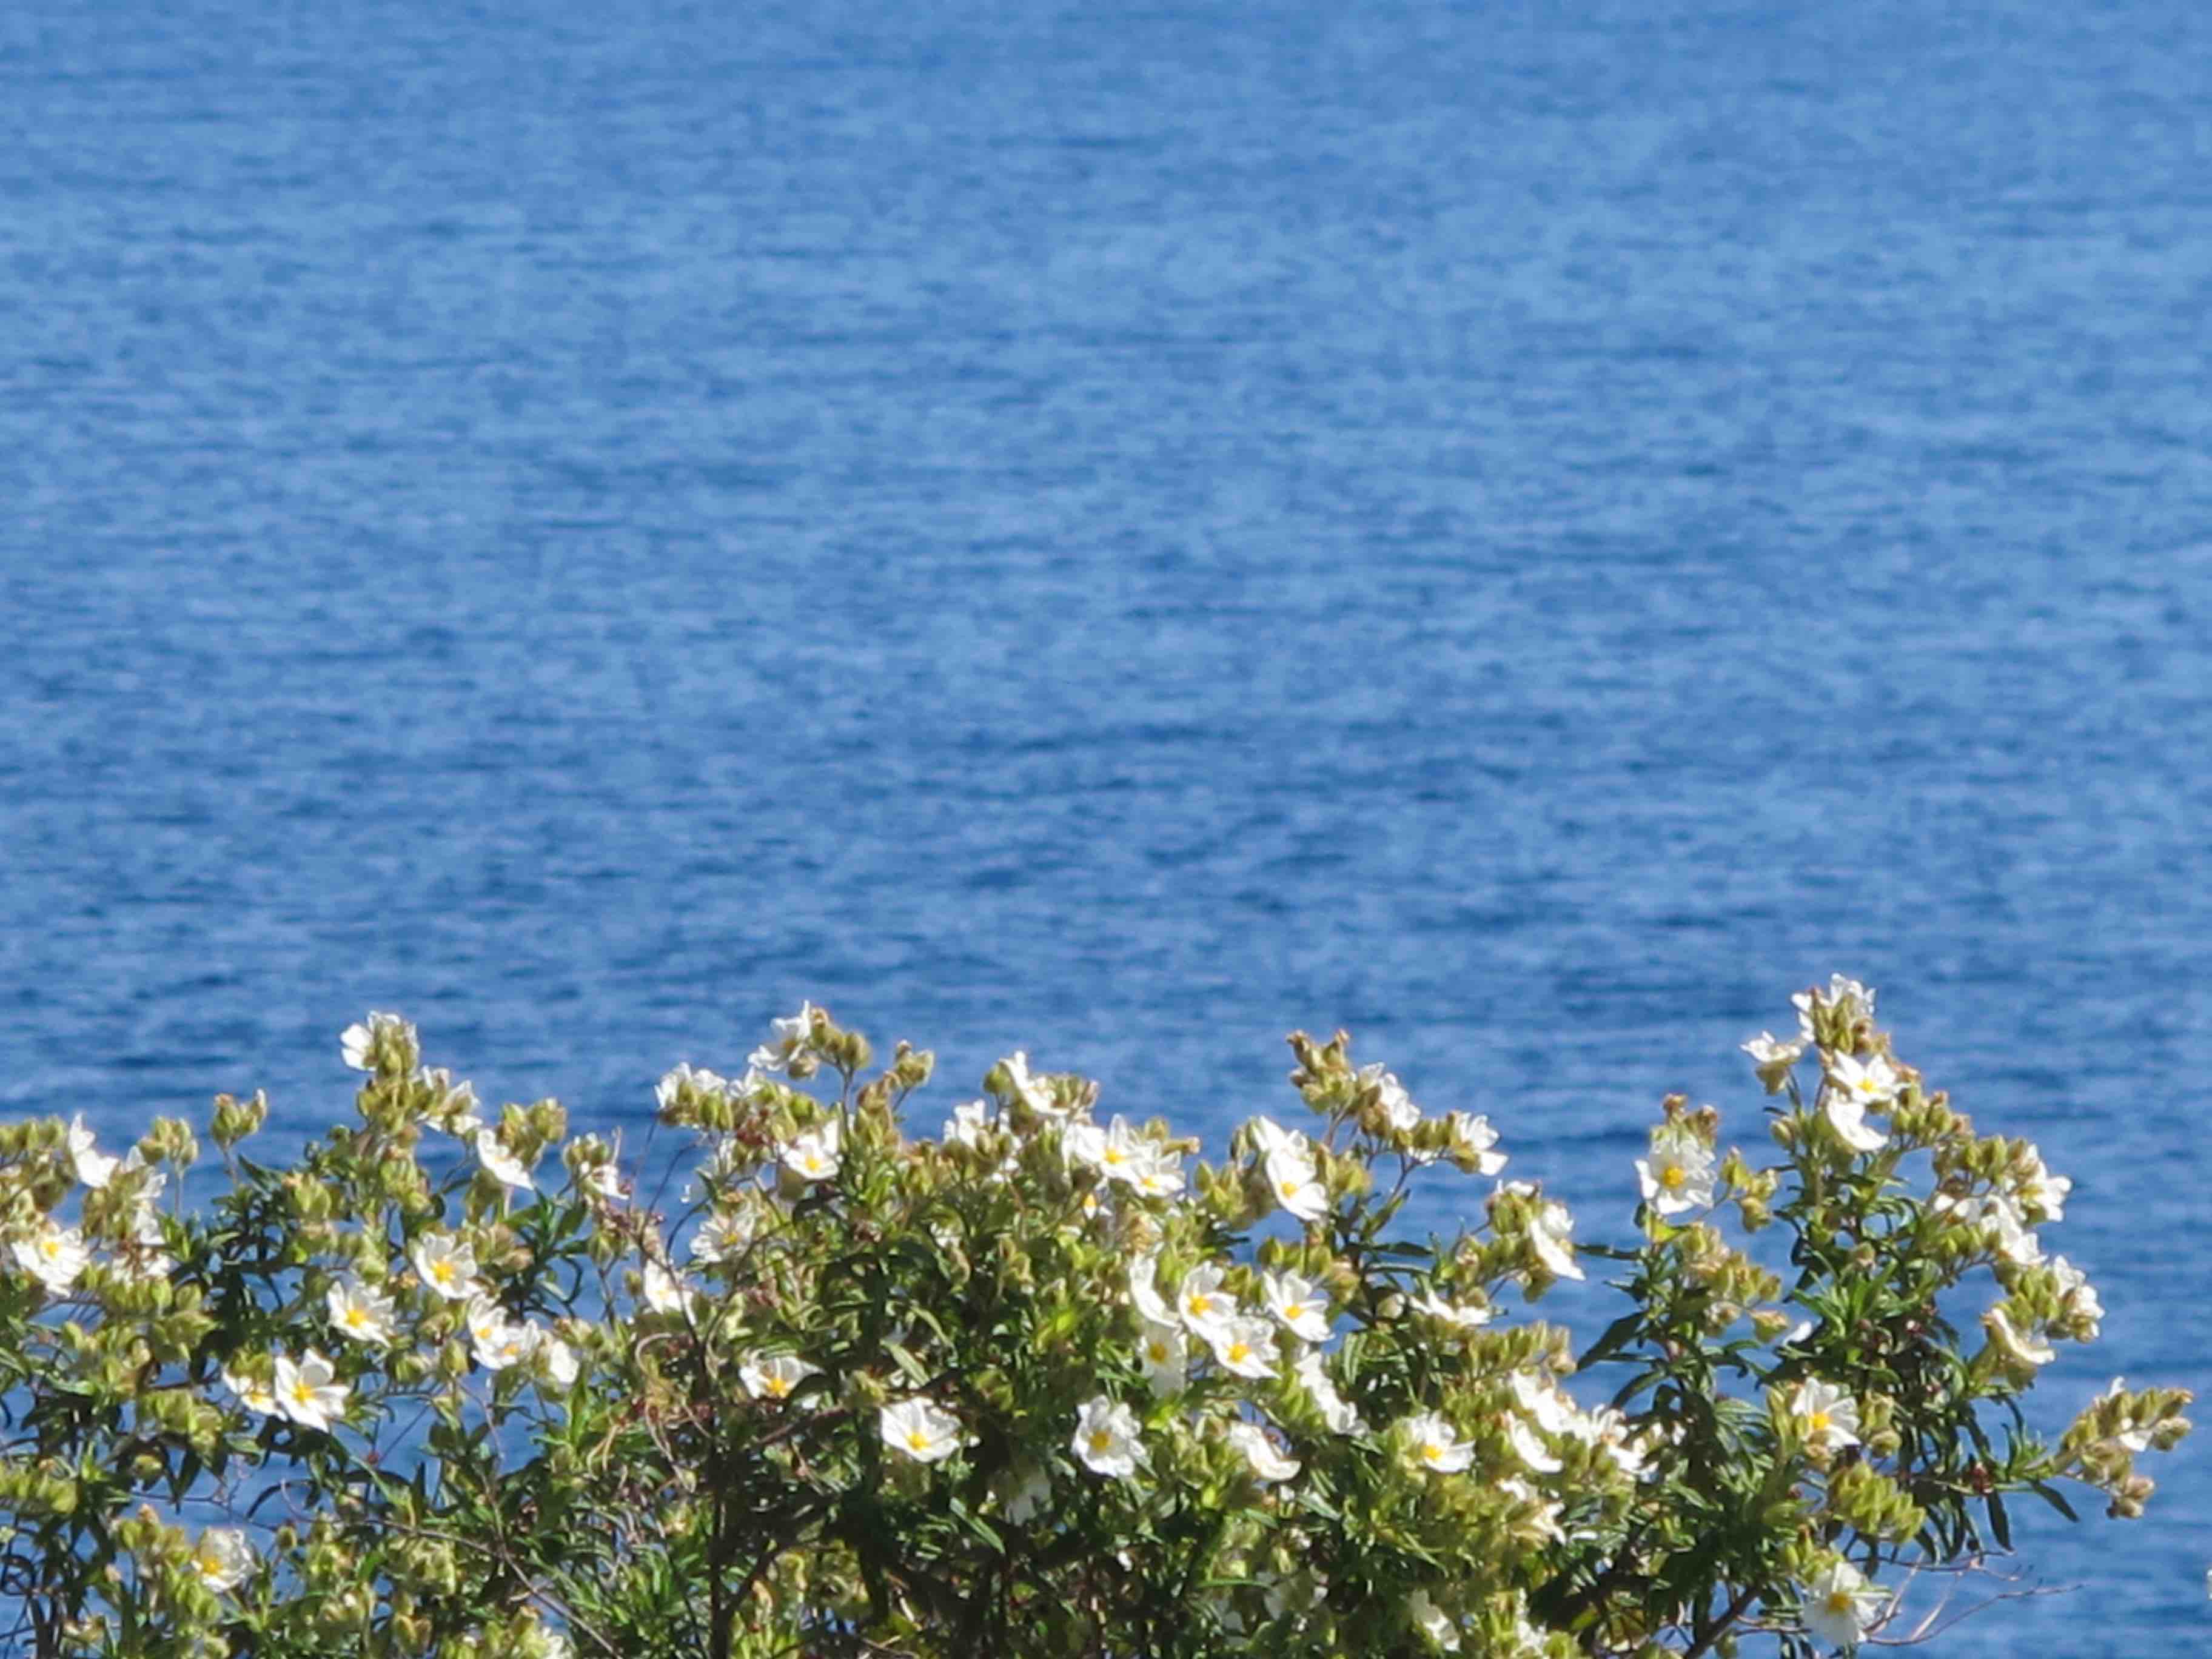 Tardor a l'illa de Sardenya. Usos medicinals, culinaris i decoratius de les plantes de l'illa